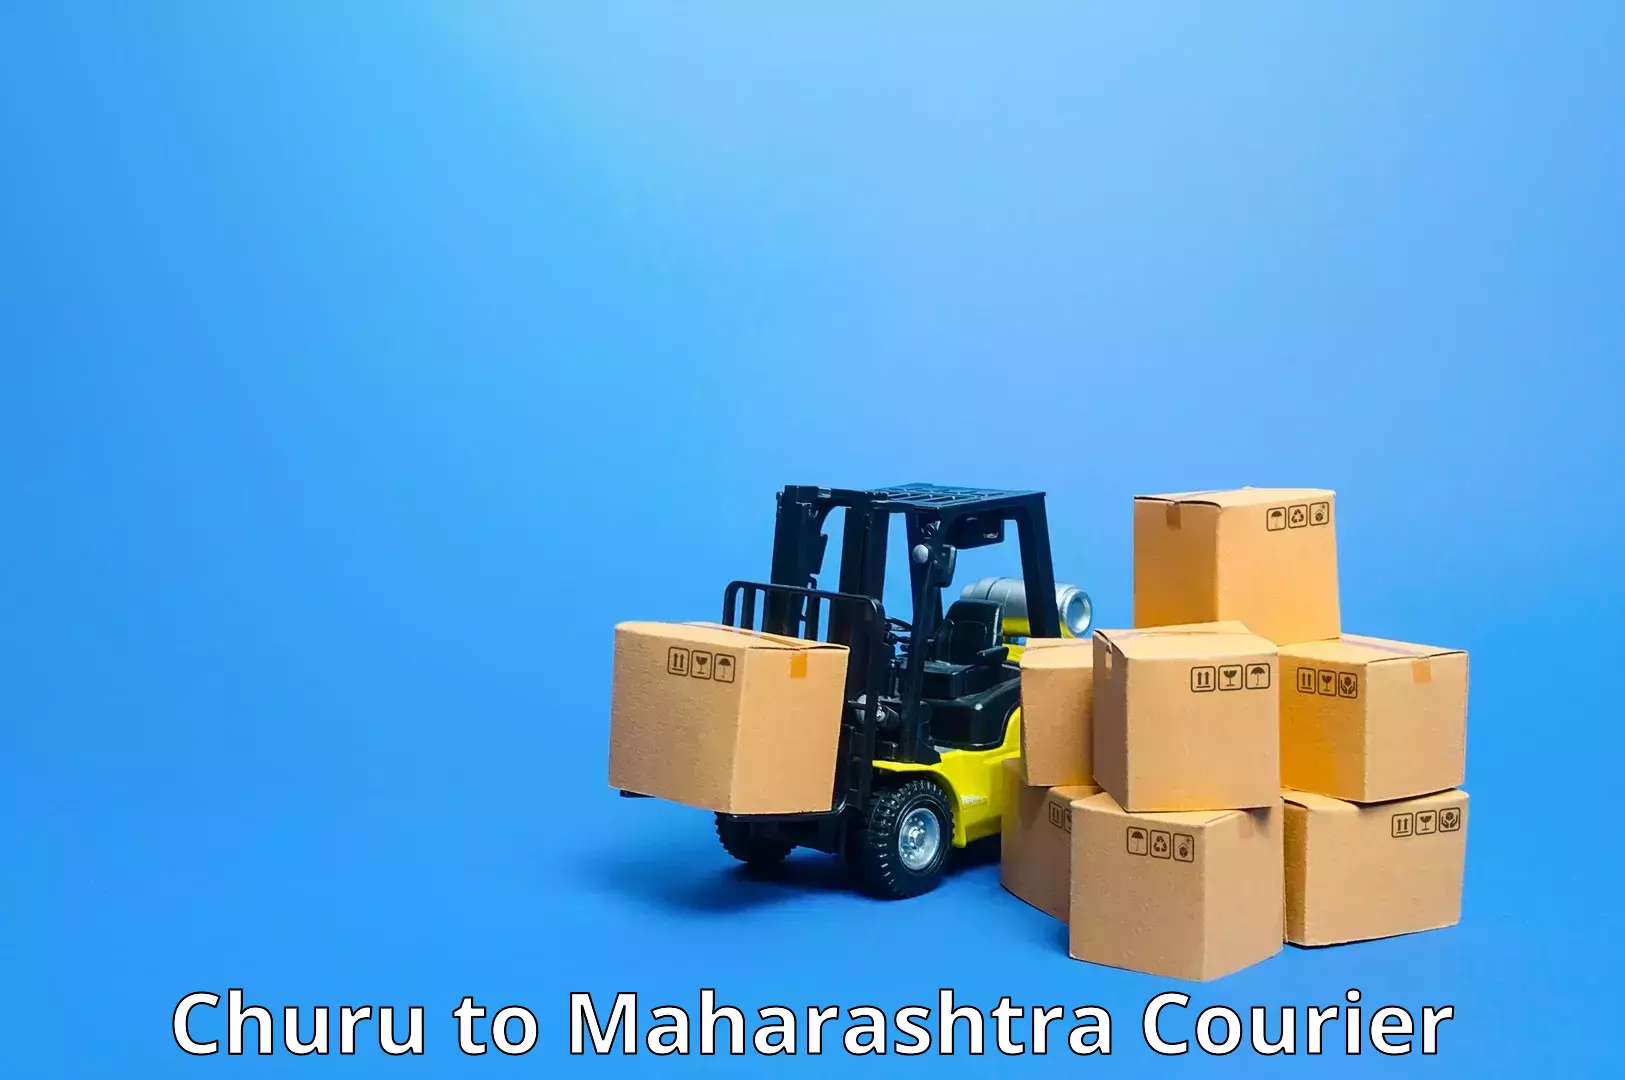 Rapid freight solutions Churu to IIT Mumbai